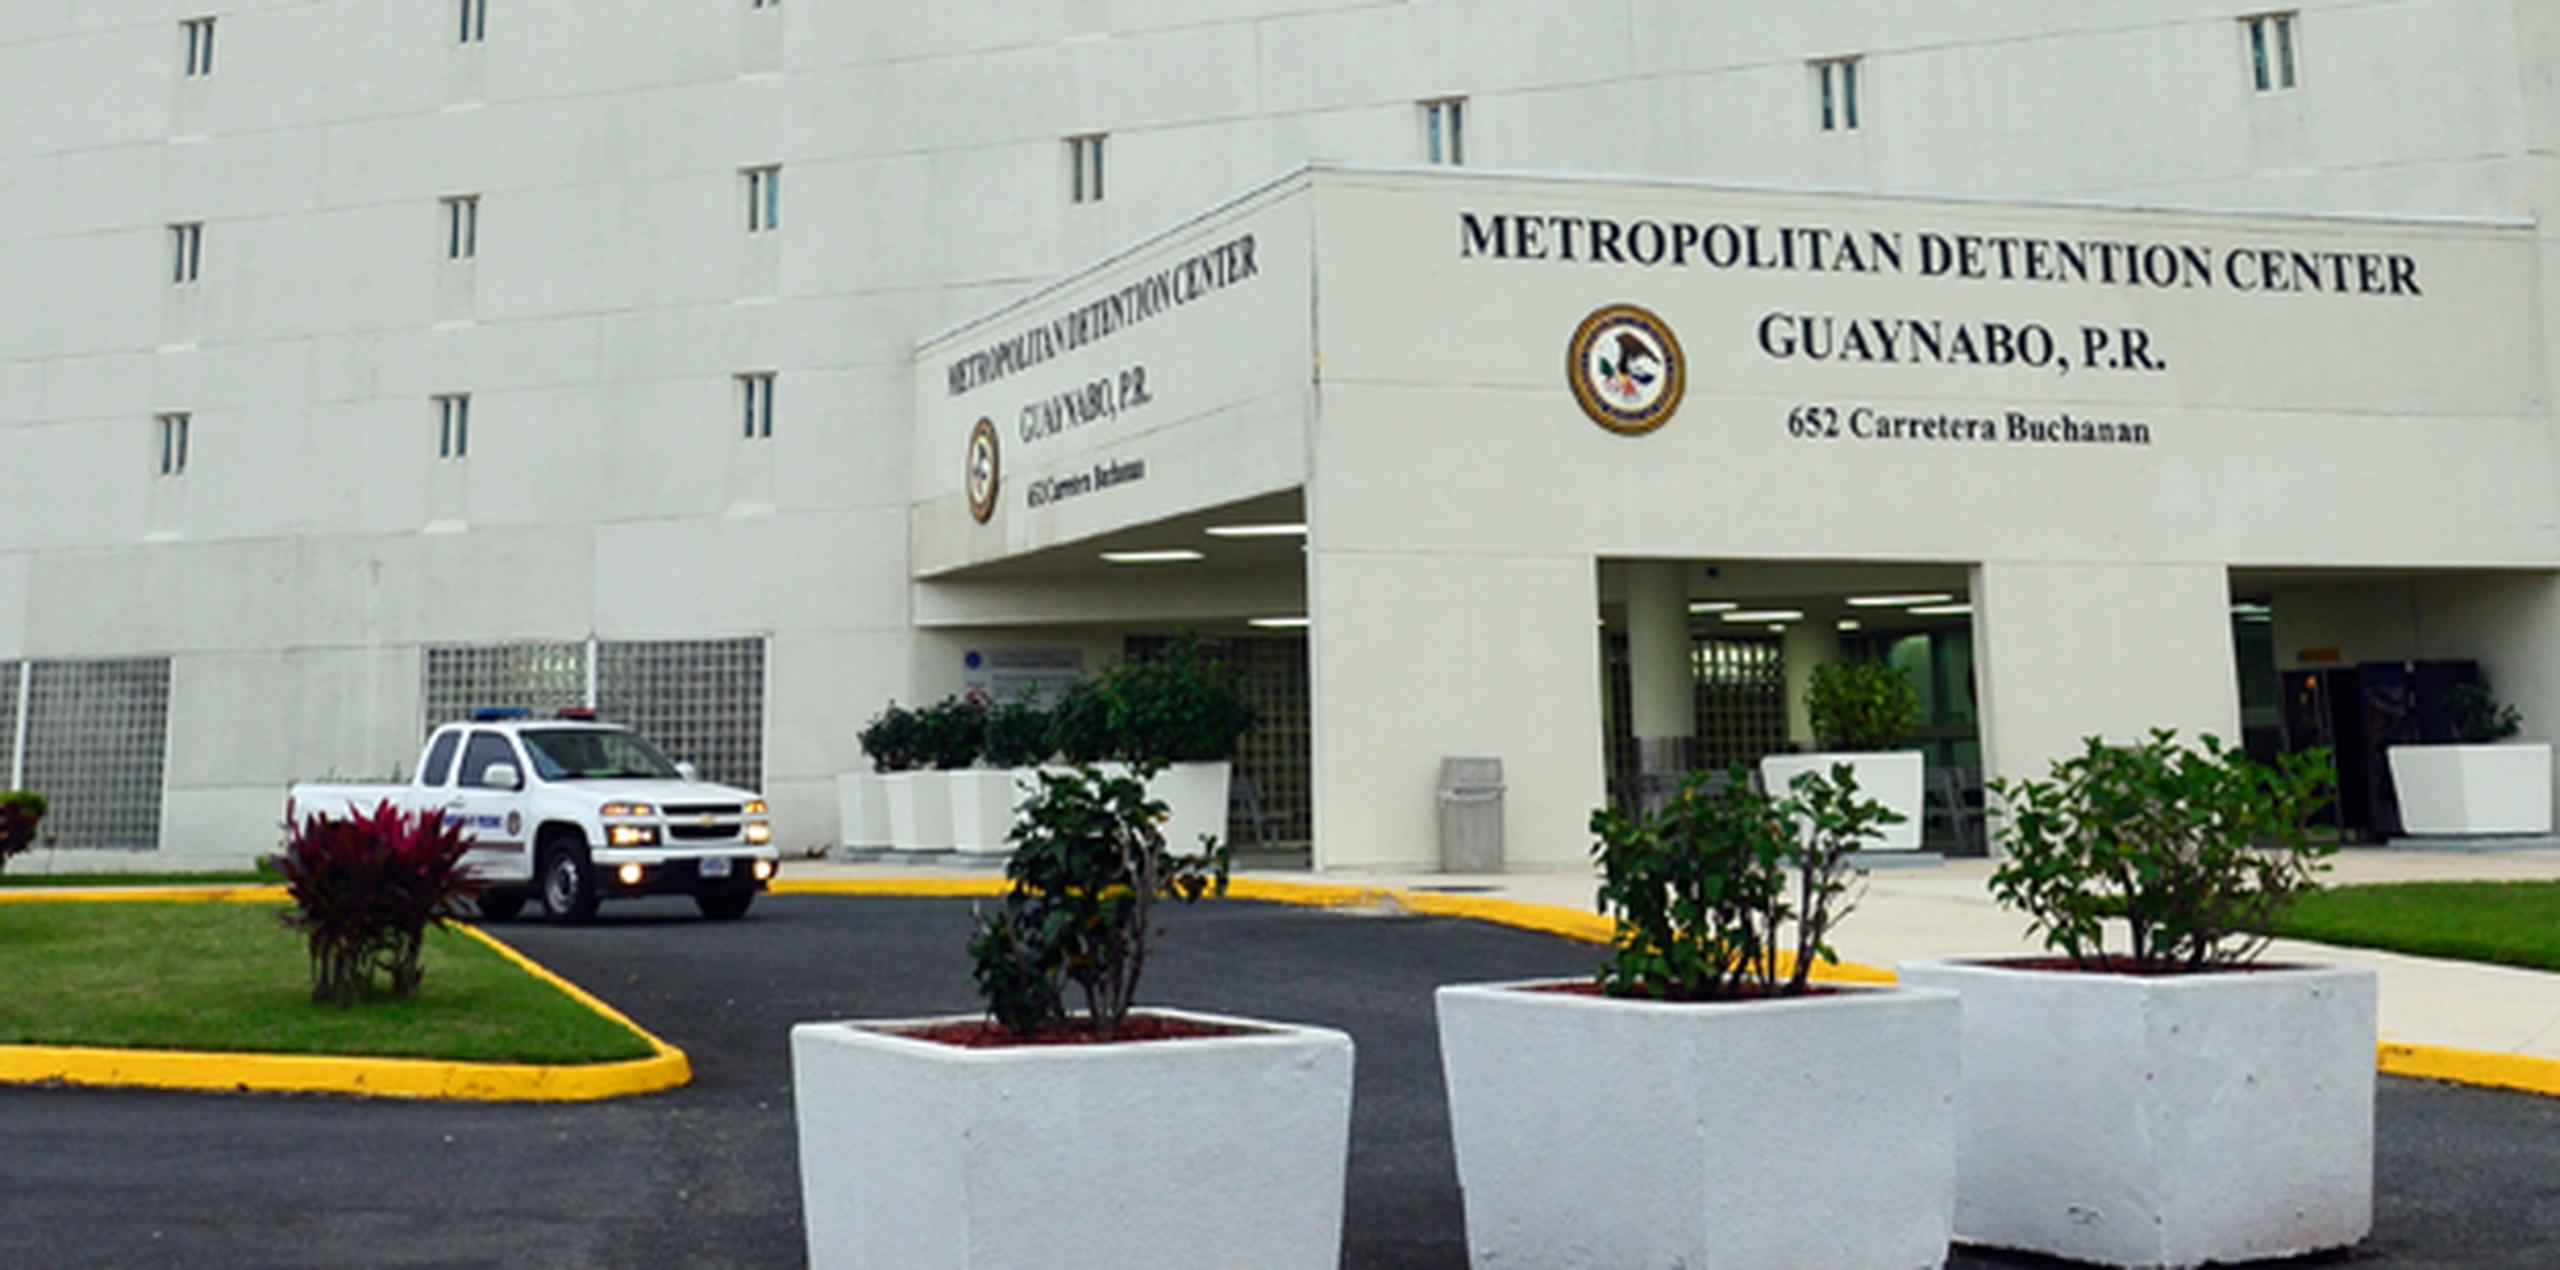 El presunto victimario fue ingresado al Centro Metropolitano de Detención, en Guaynabo, tras comparecer a su vista inicial el pasado martes ante el magistrado federal Justo Arenas. (Archivo)